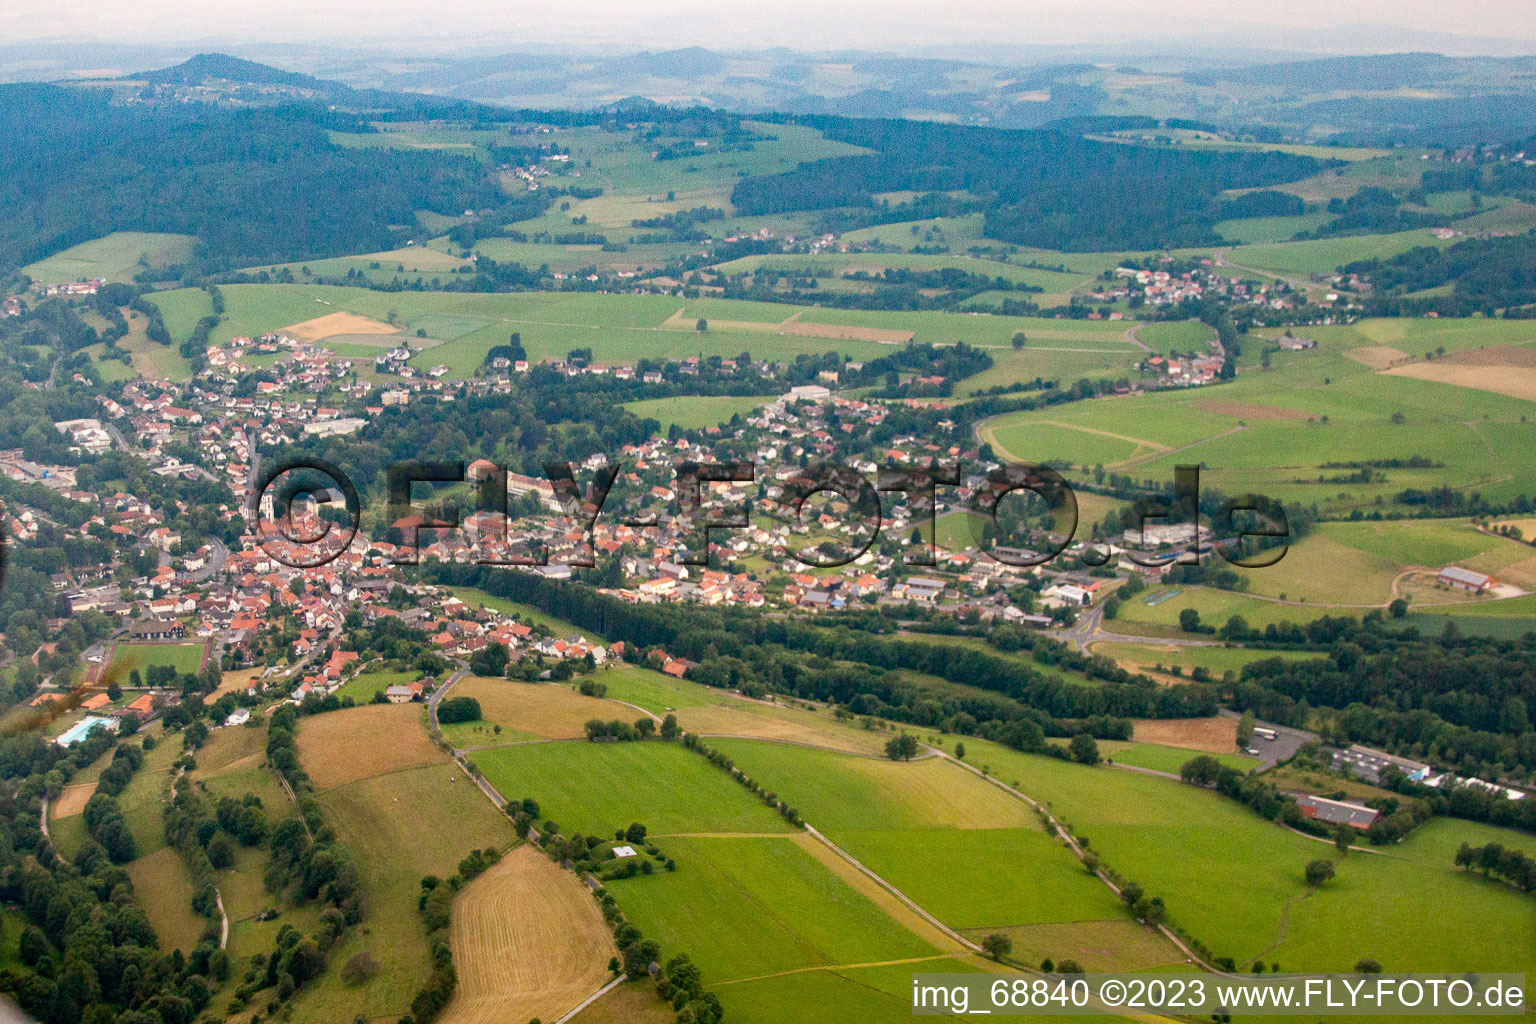 Vue aérienne de Gersfeld (Rhön) dans le département Hesse, Allemagne